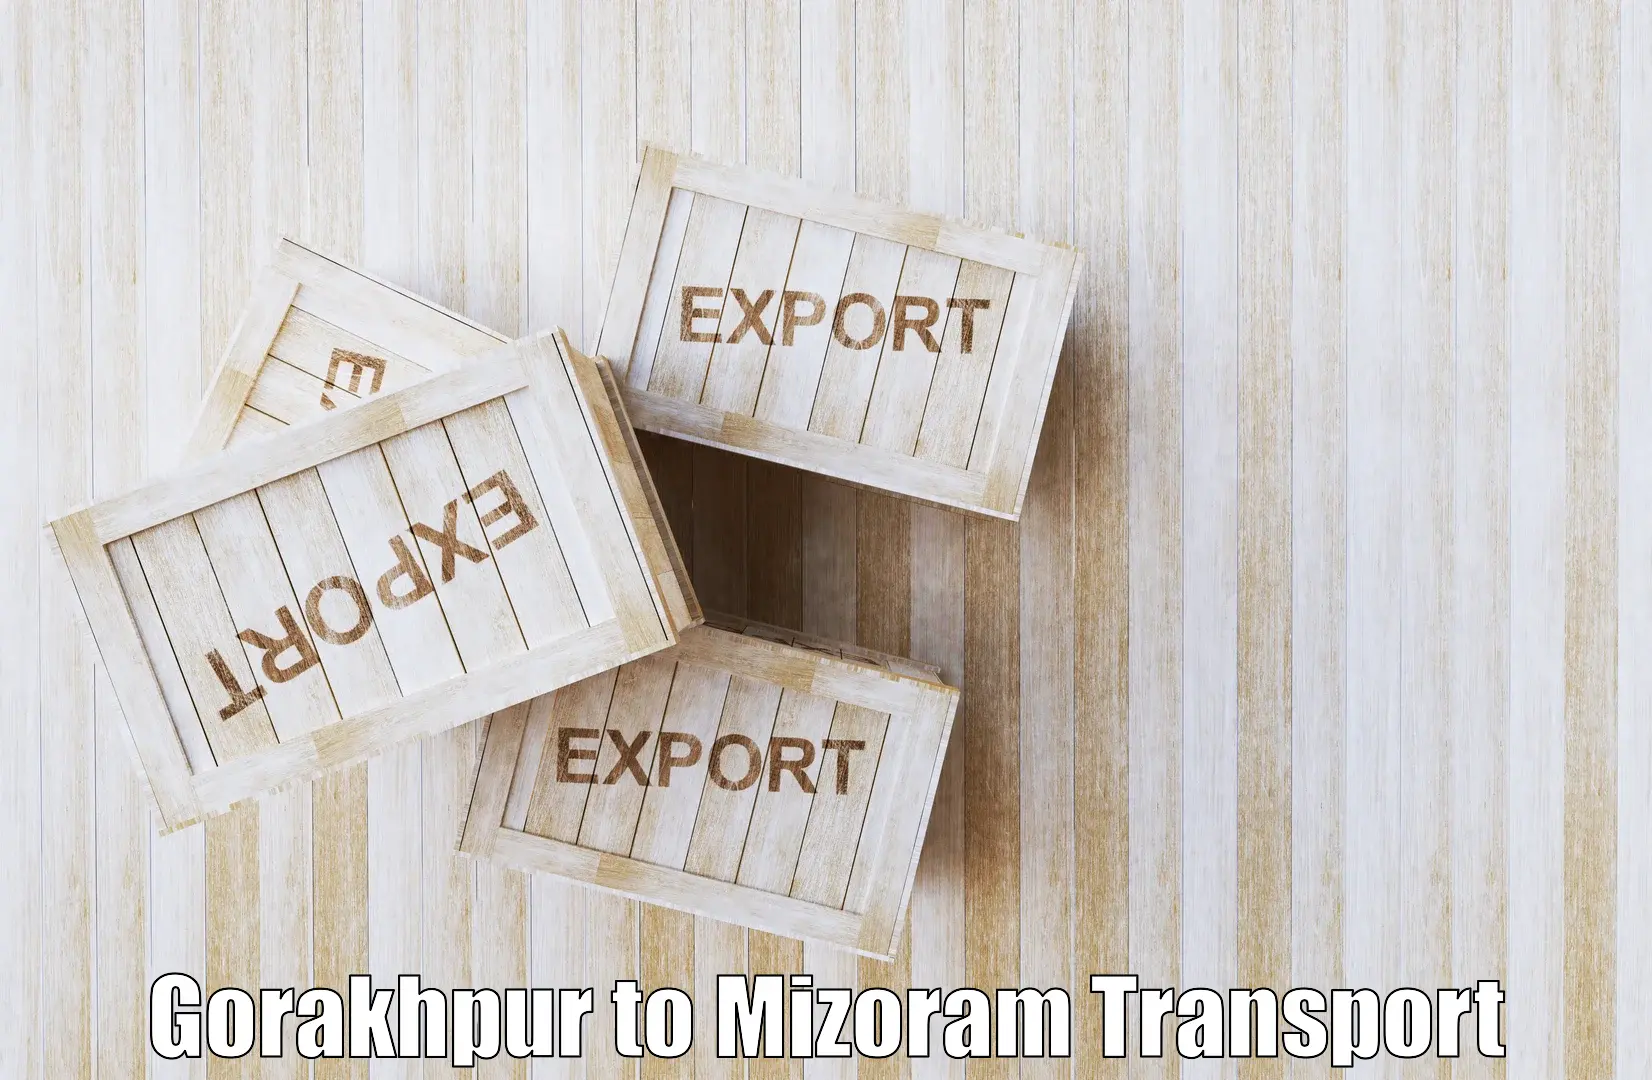 Two wheeler transport services Gorakhpur to Thenzawl